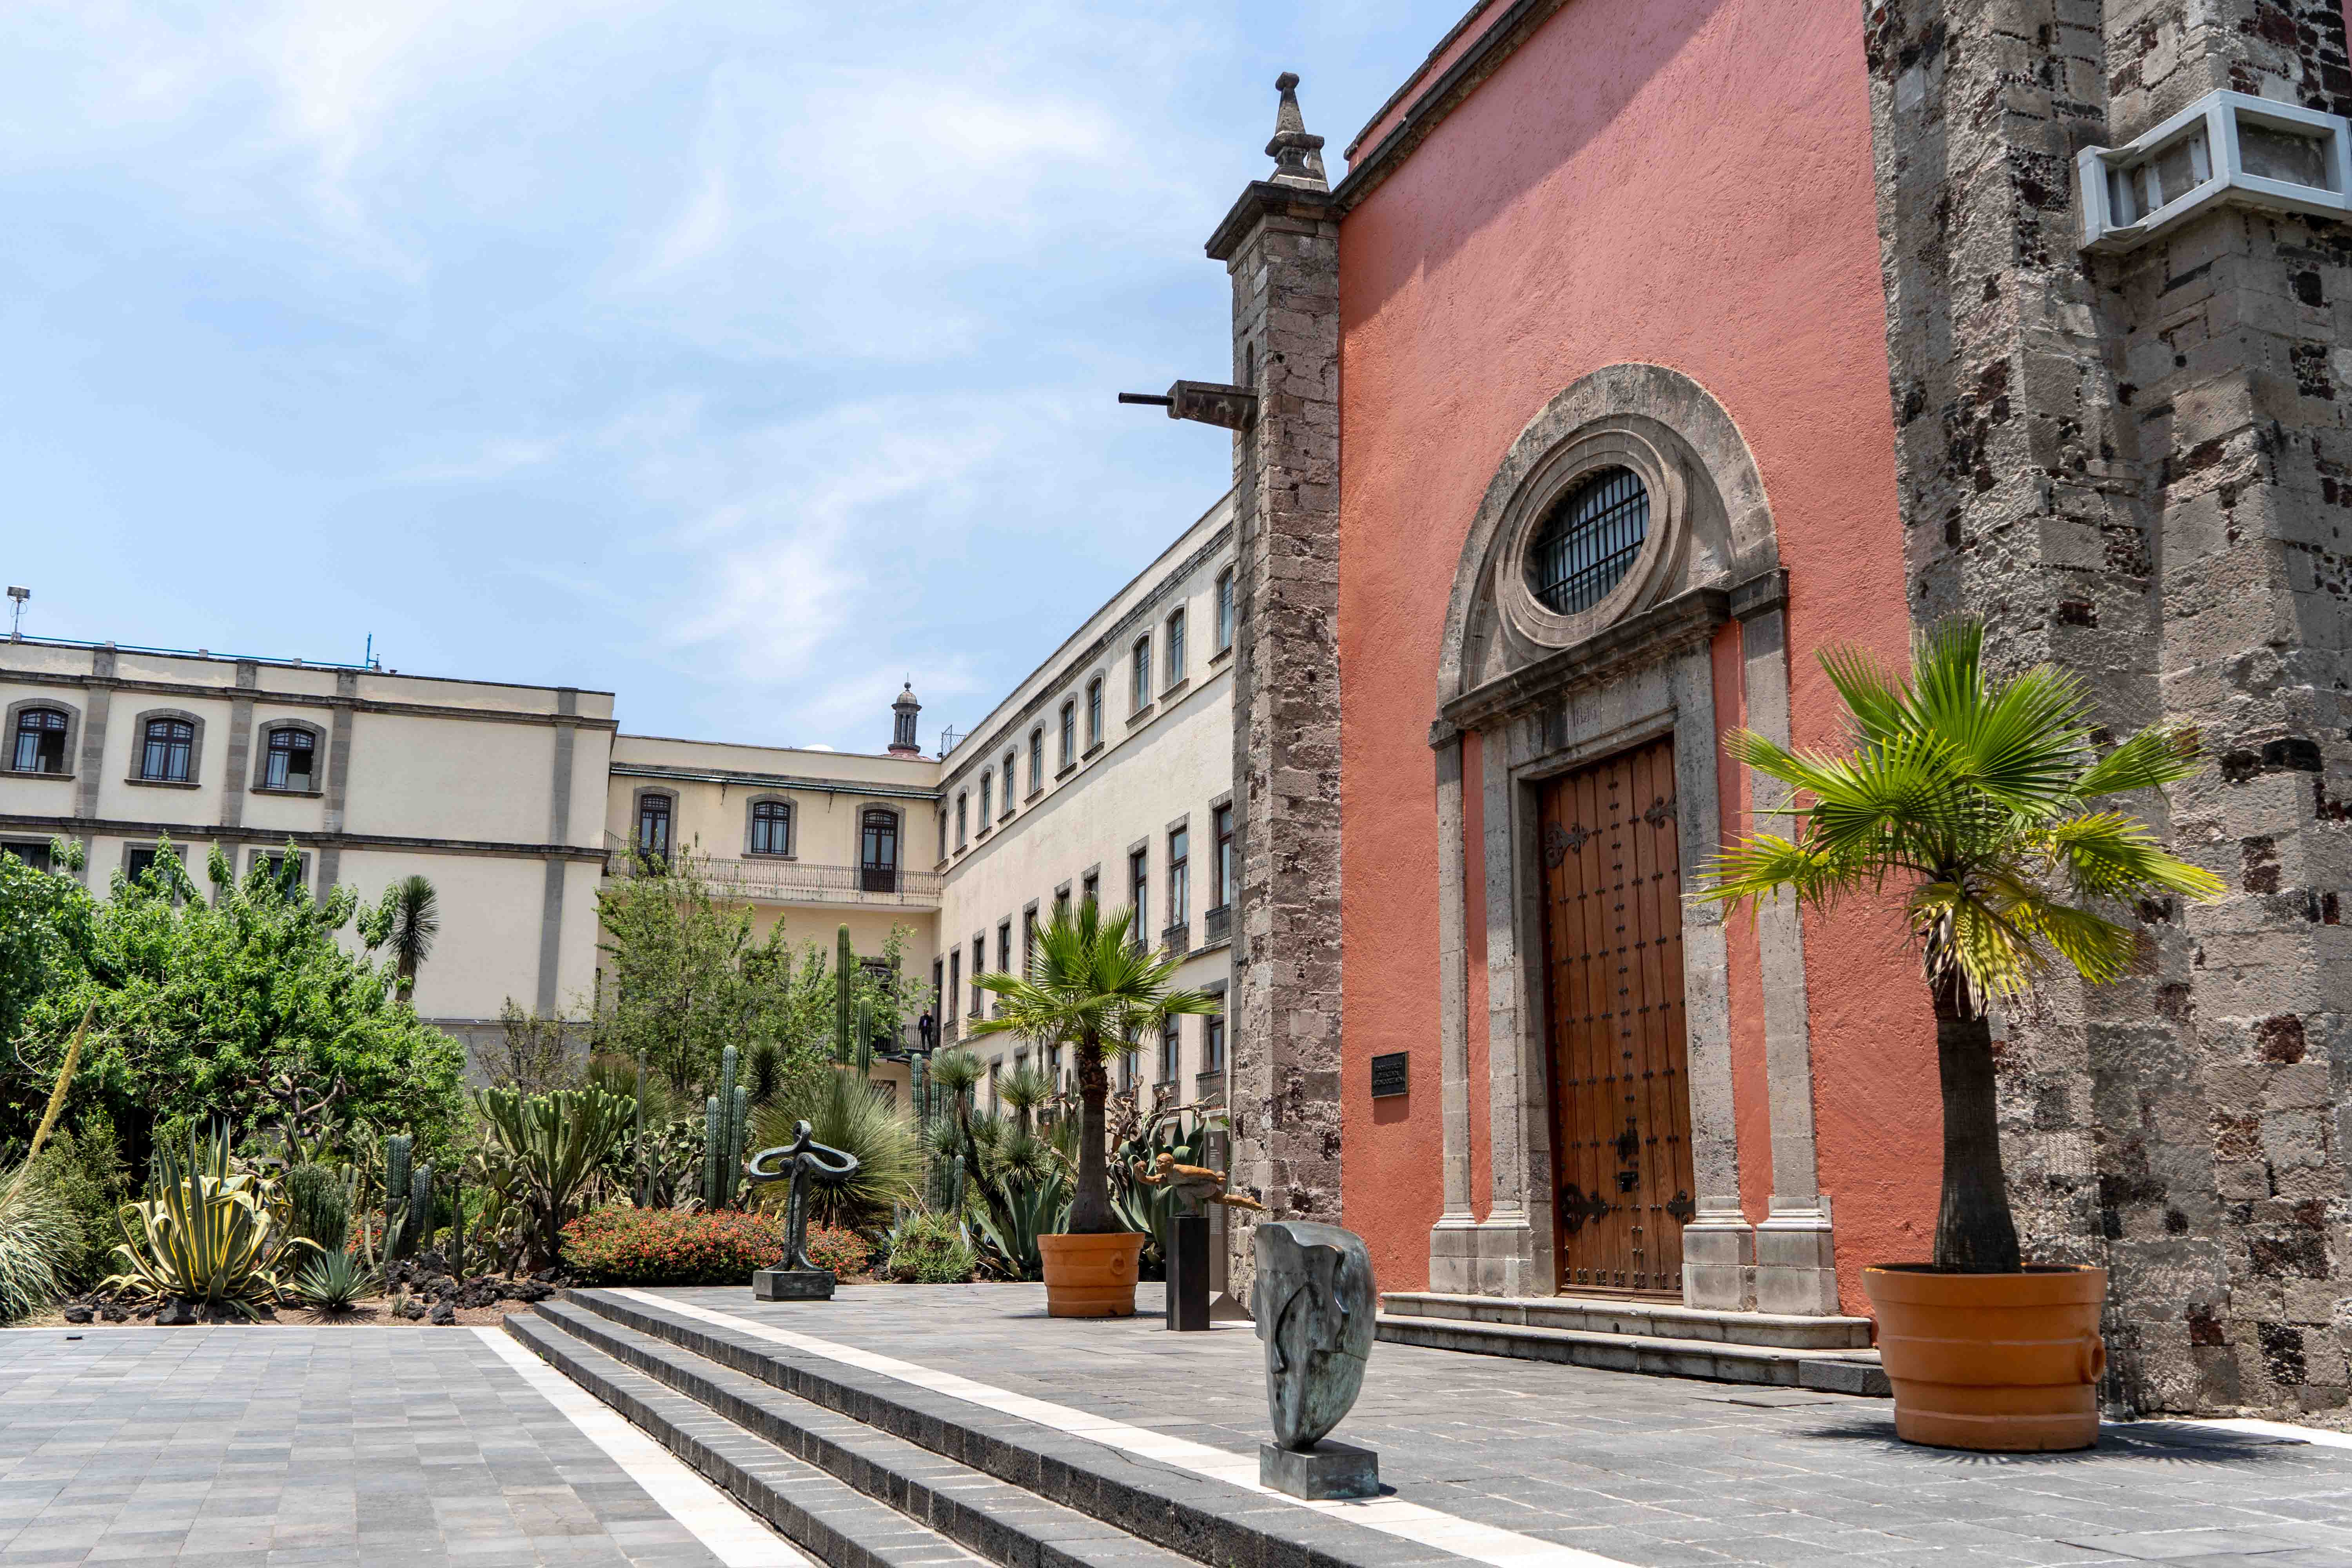 Profitez de votre visite à Mexico City pour découvrir le Palacio Nacional dans le centre historique de la ville.